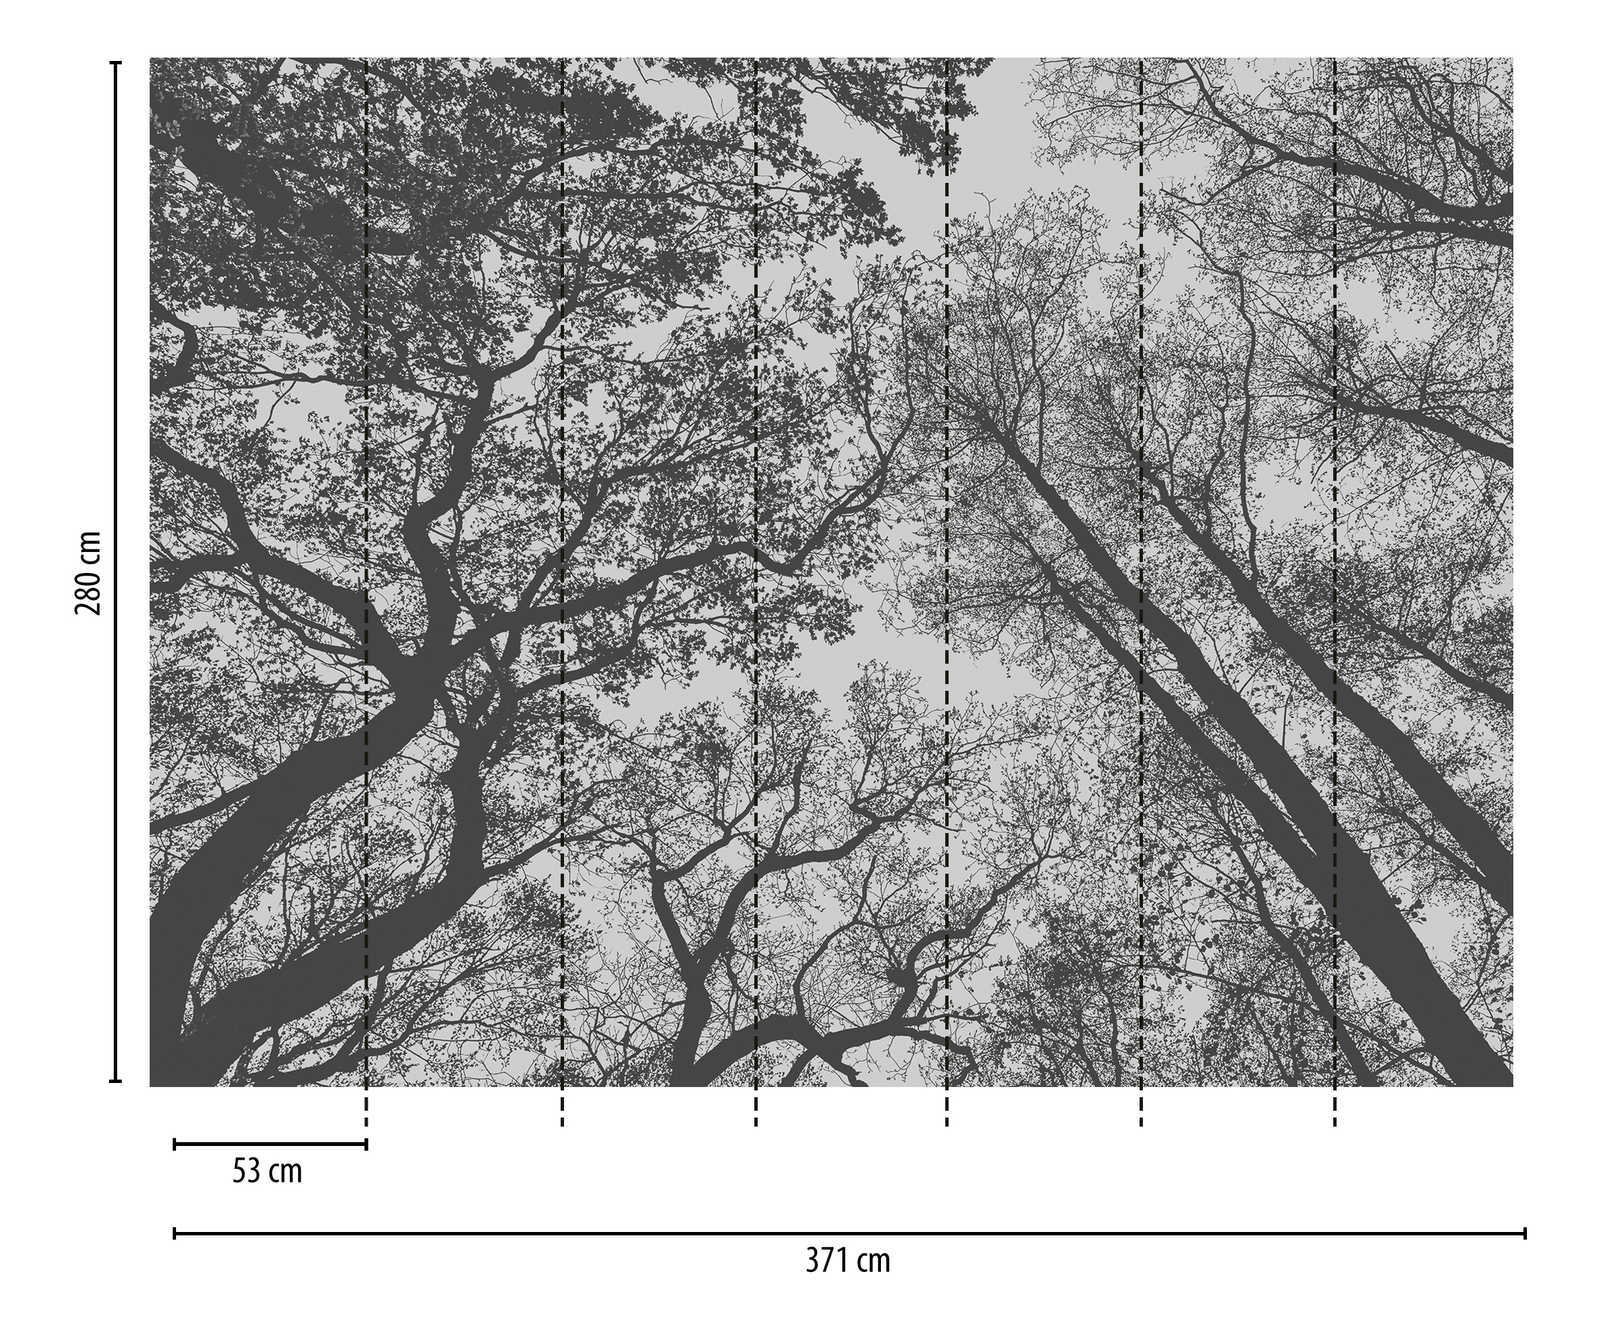             behang nieuwigheid - motief behang boomtoppen zwart & grijs
        